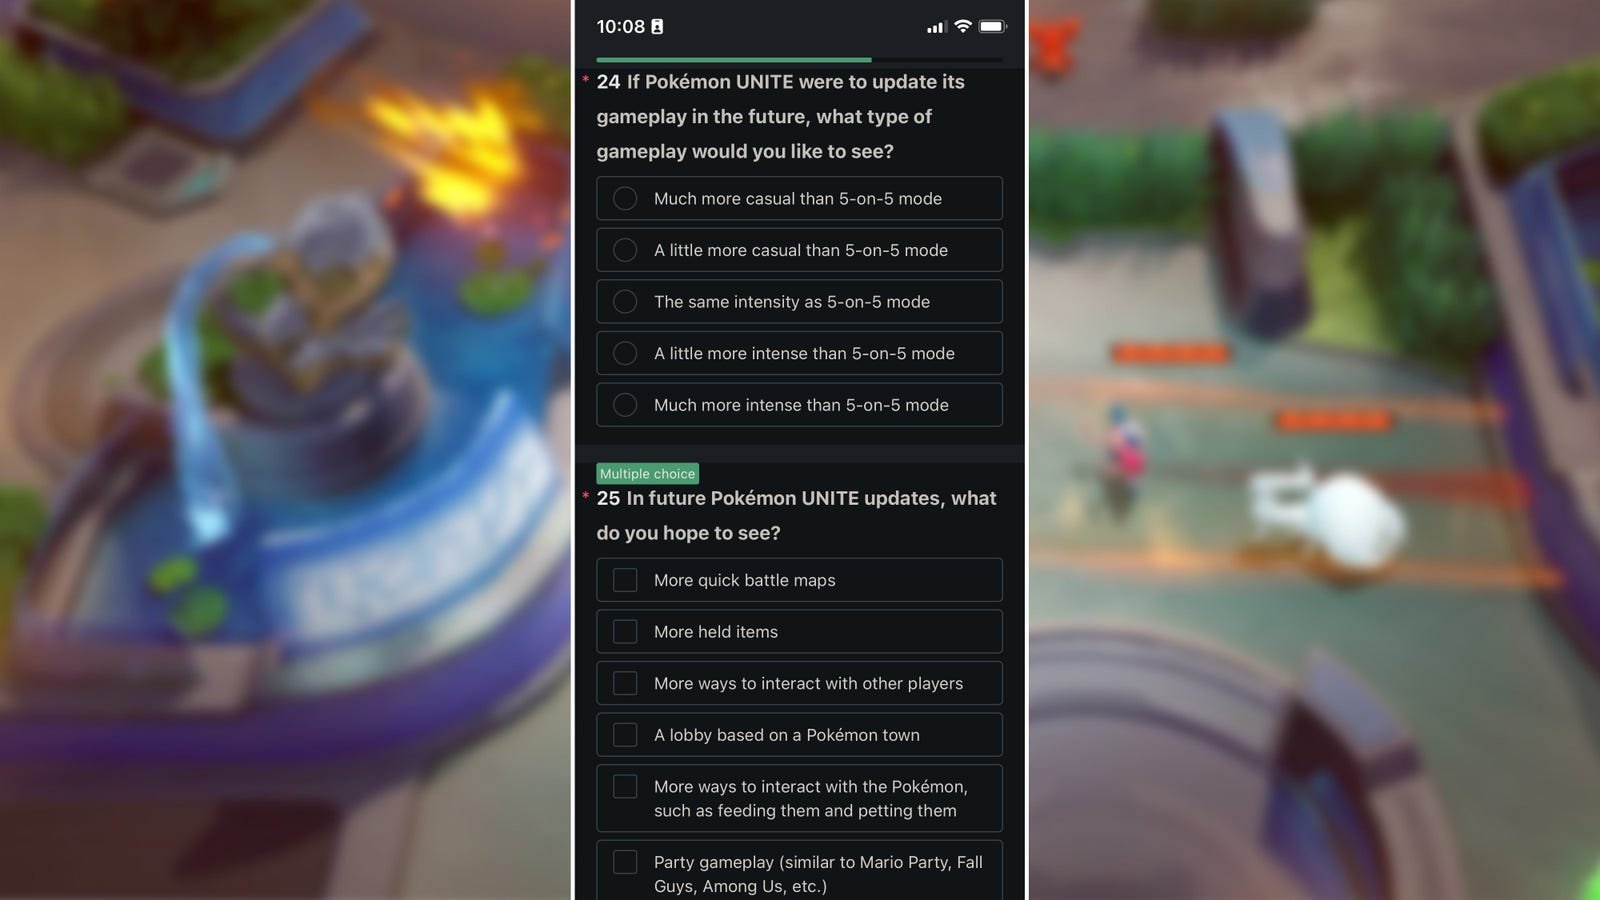 Desenvolvedores querem saber a opinião dos jogadores sobre o futuro de Pokémon Unite